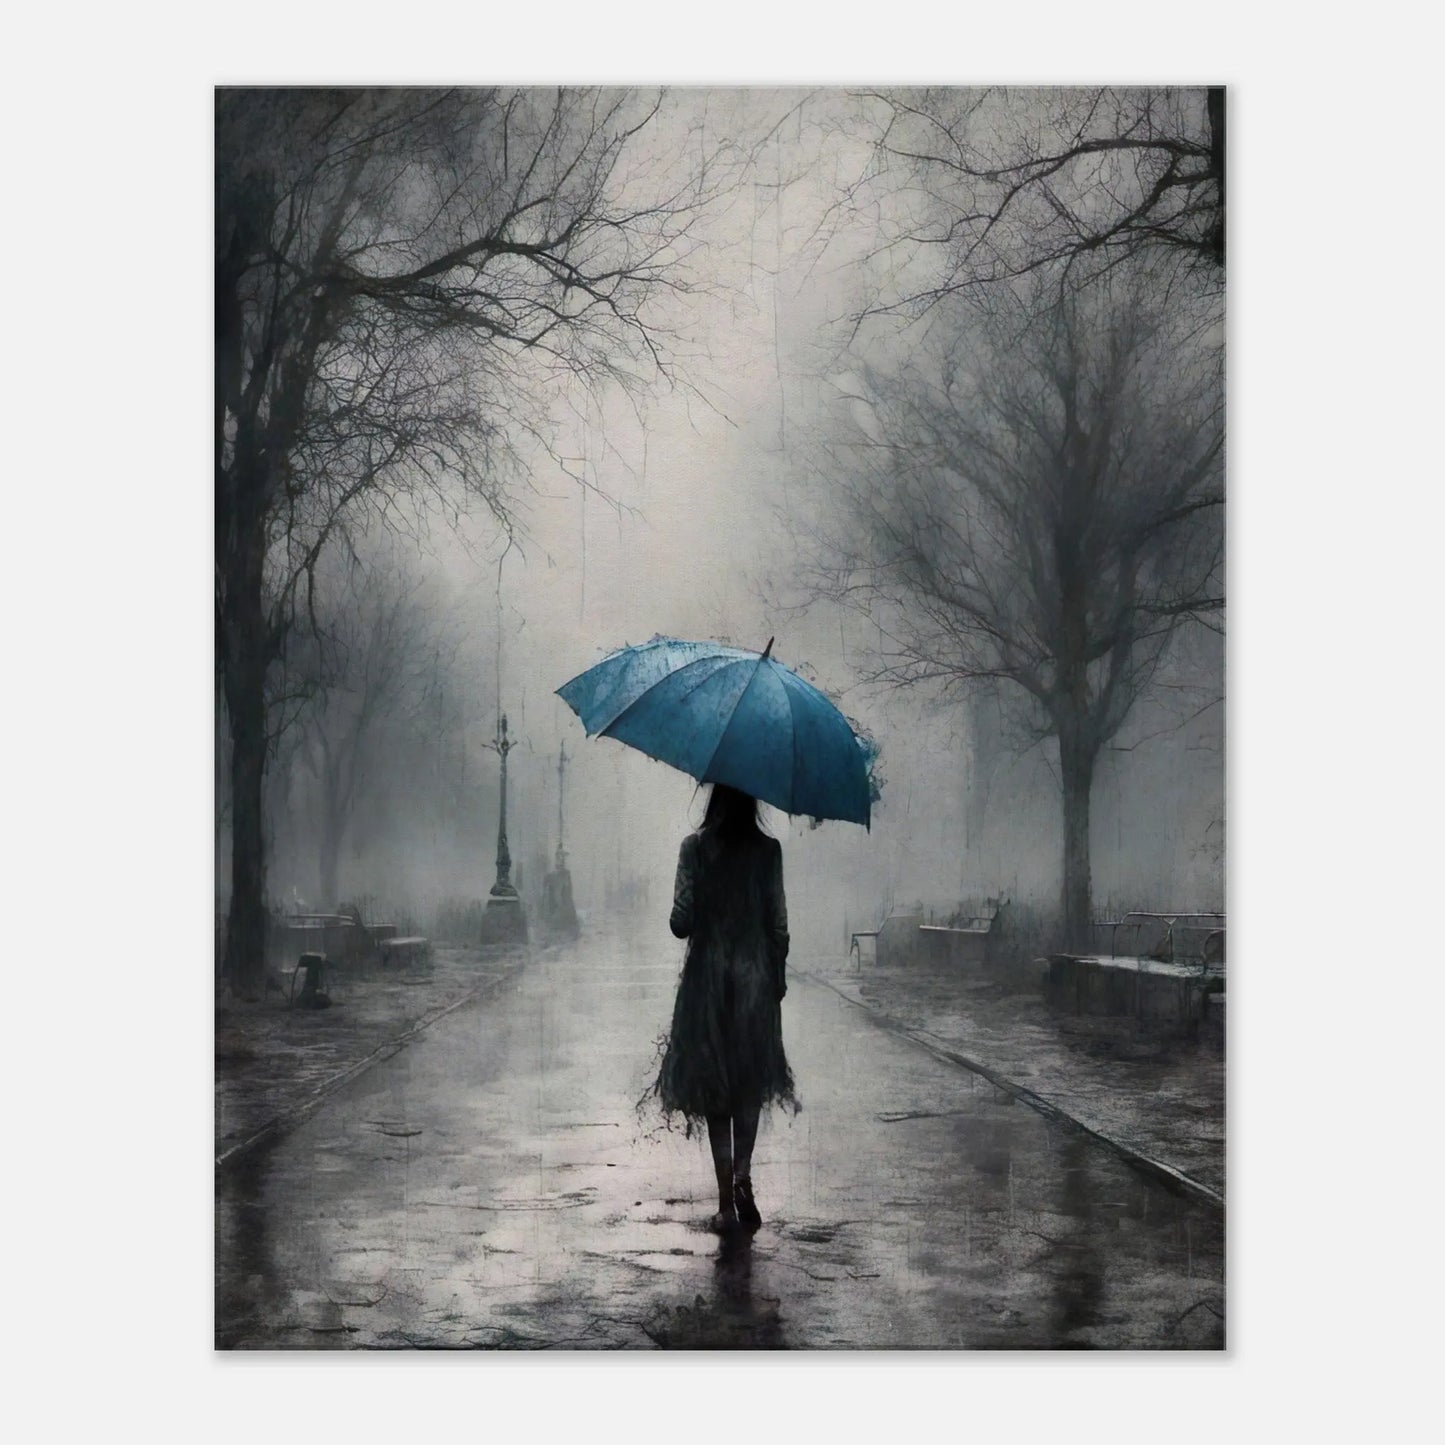 Leinwandbild -Frau mit einem blauen Regenschirm- Schwarz-Weiß, KI-Kunst - RolConArt, Schwarz-Weiß mit Akzentfarben, 60x75-cm-24x30